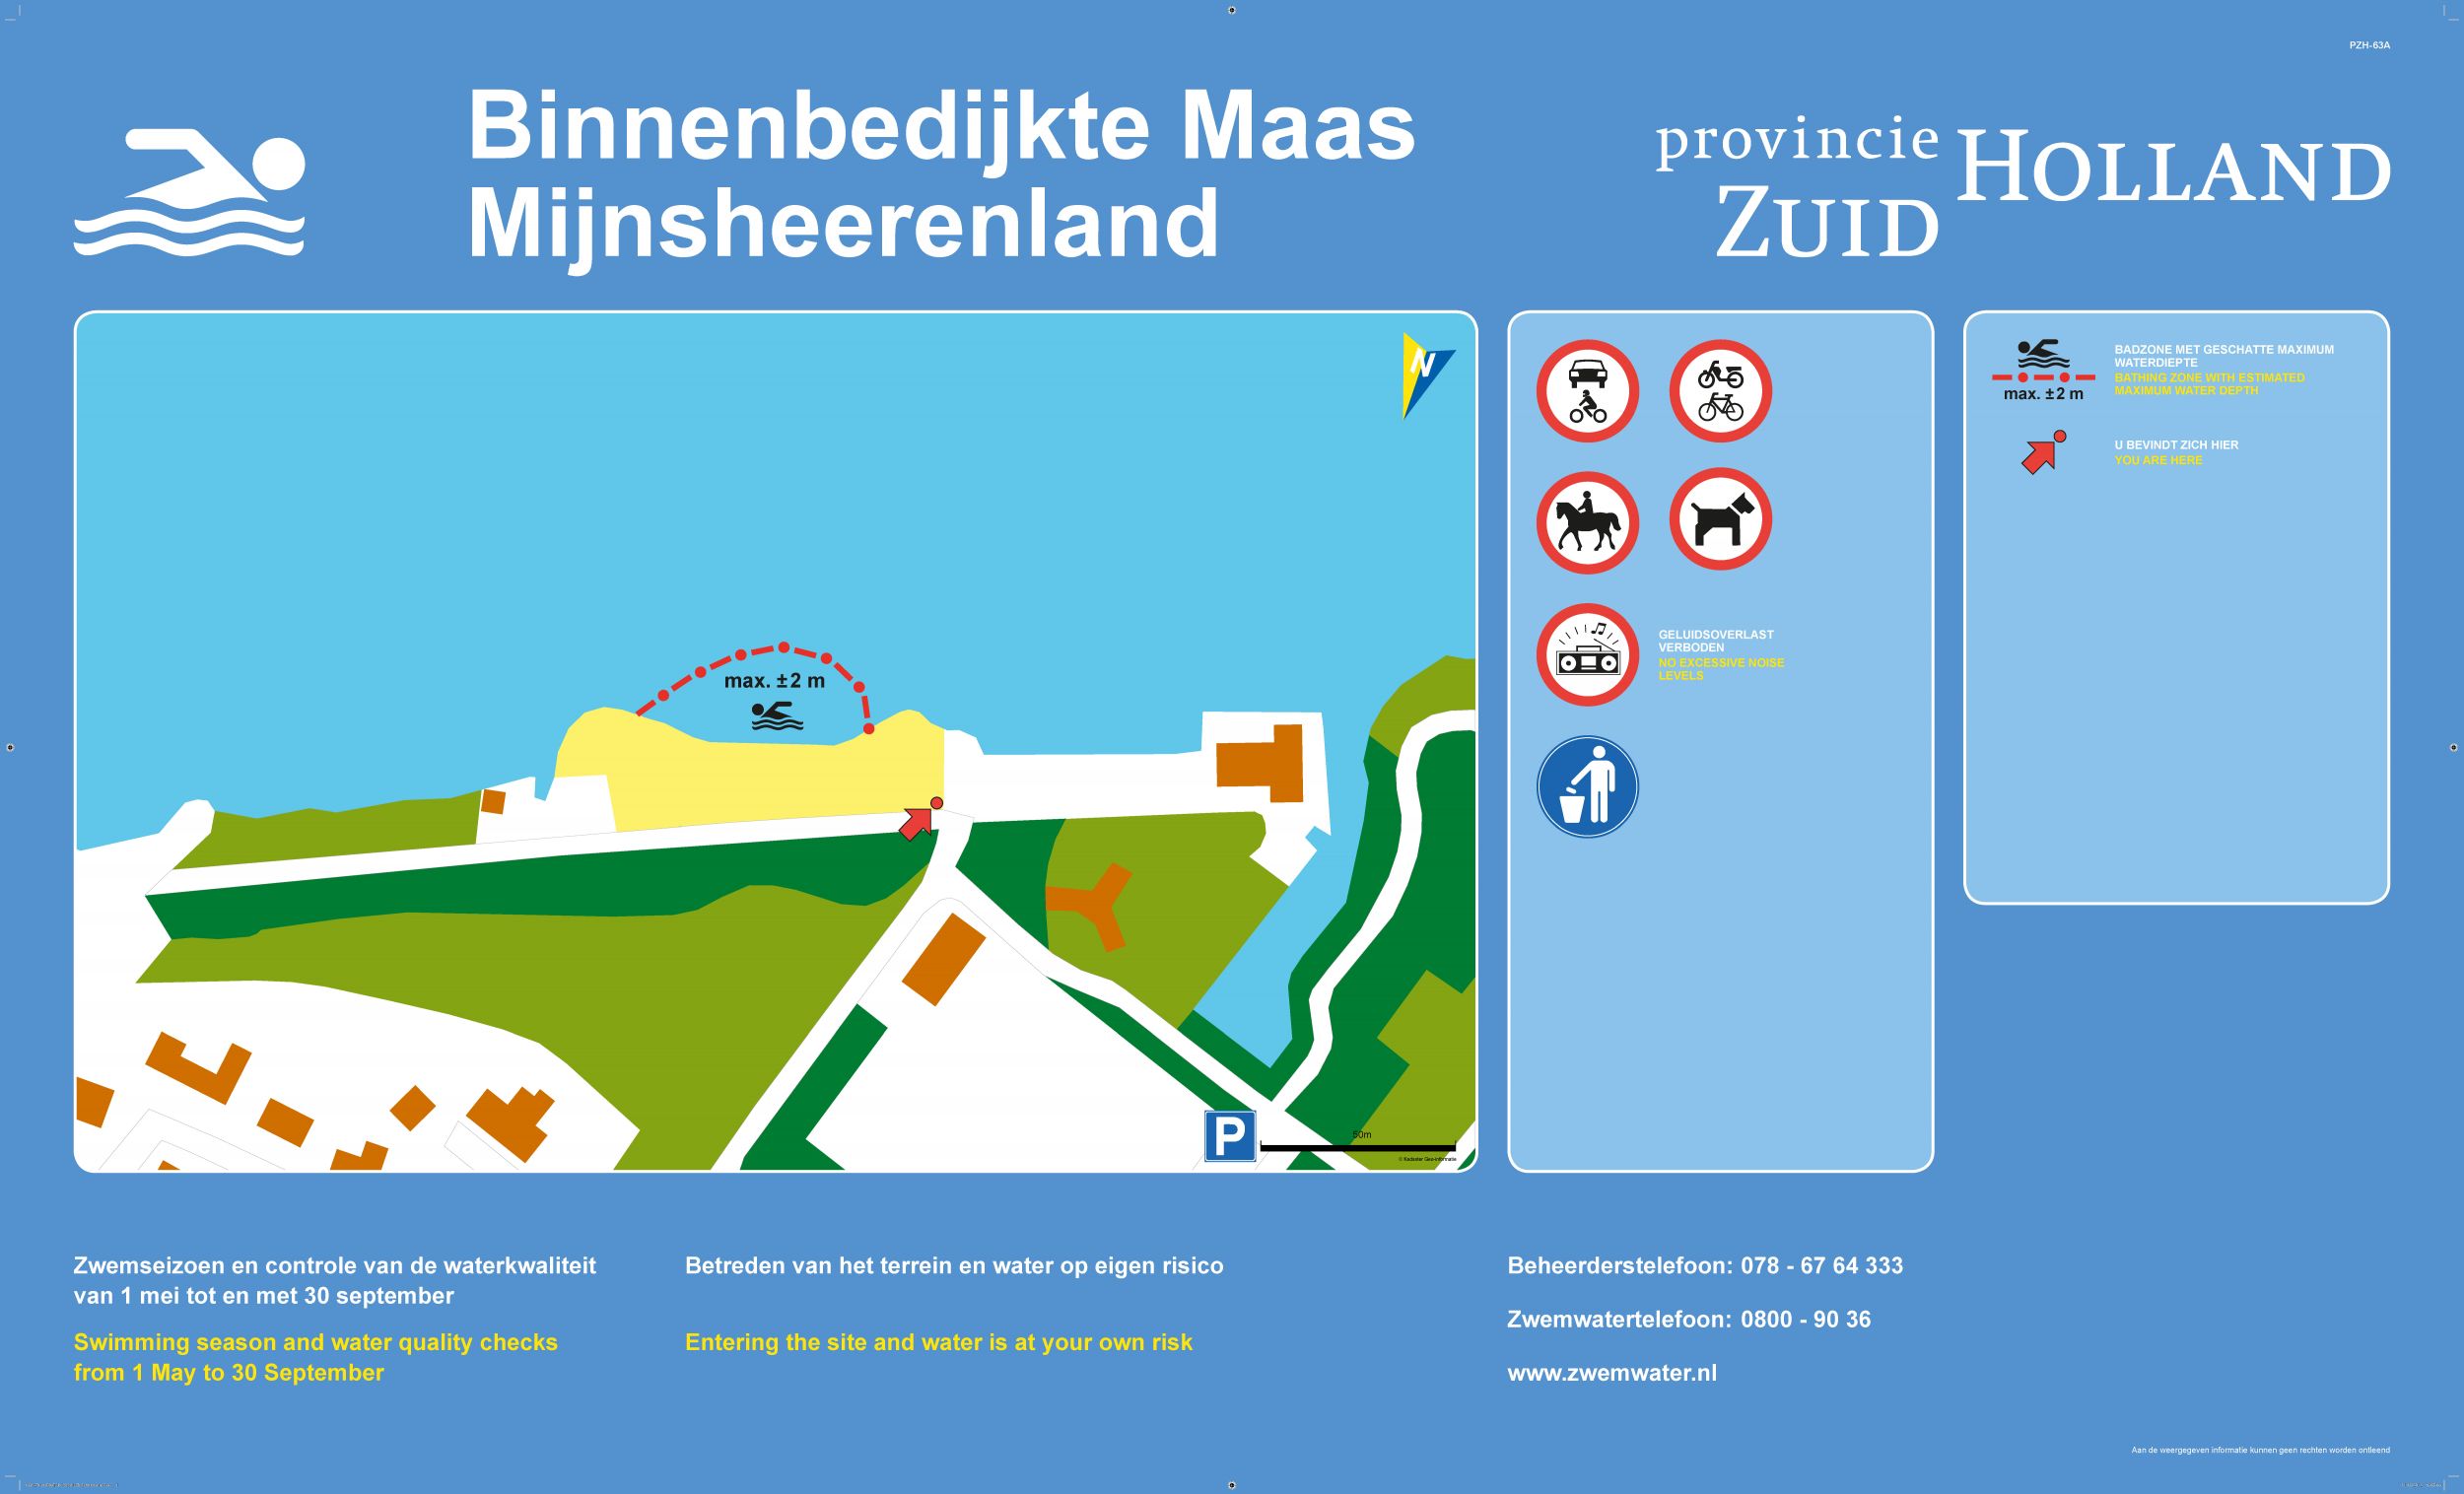 Het informatiebord bij zwemlocatie Binnenbedijkte Maas, Mijnsheerenland